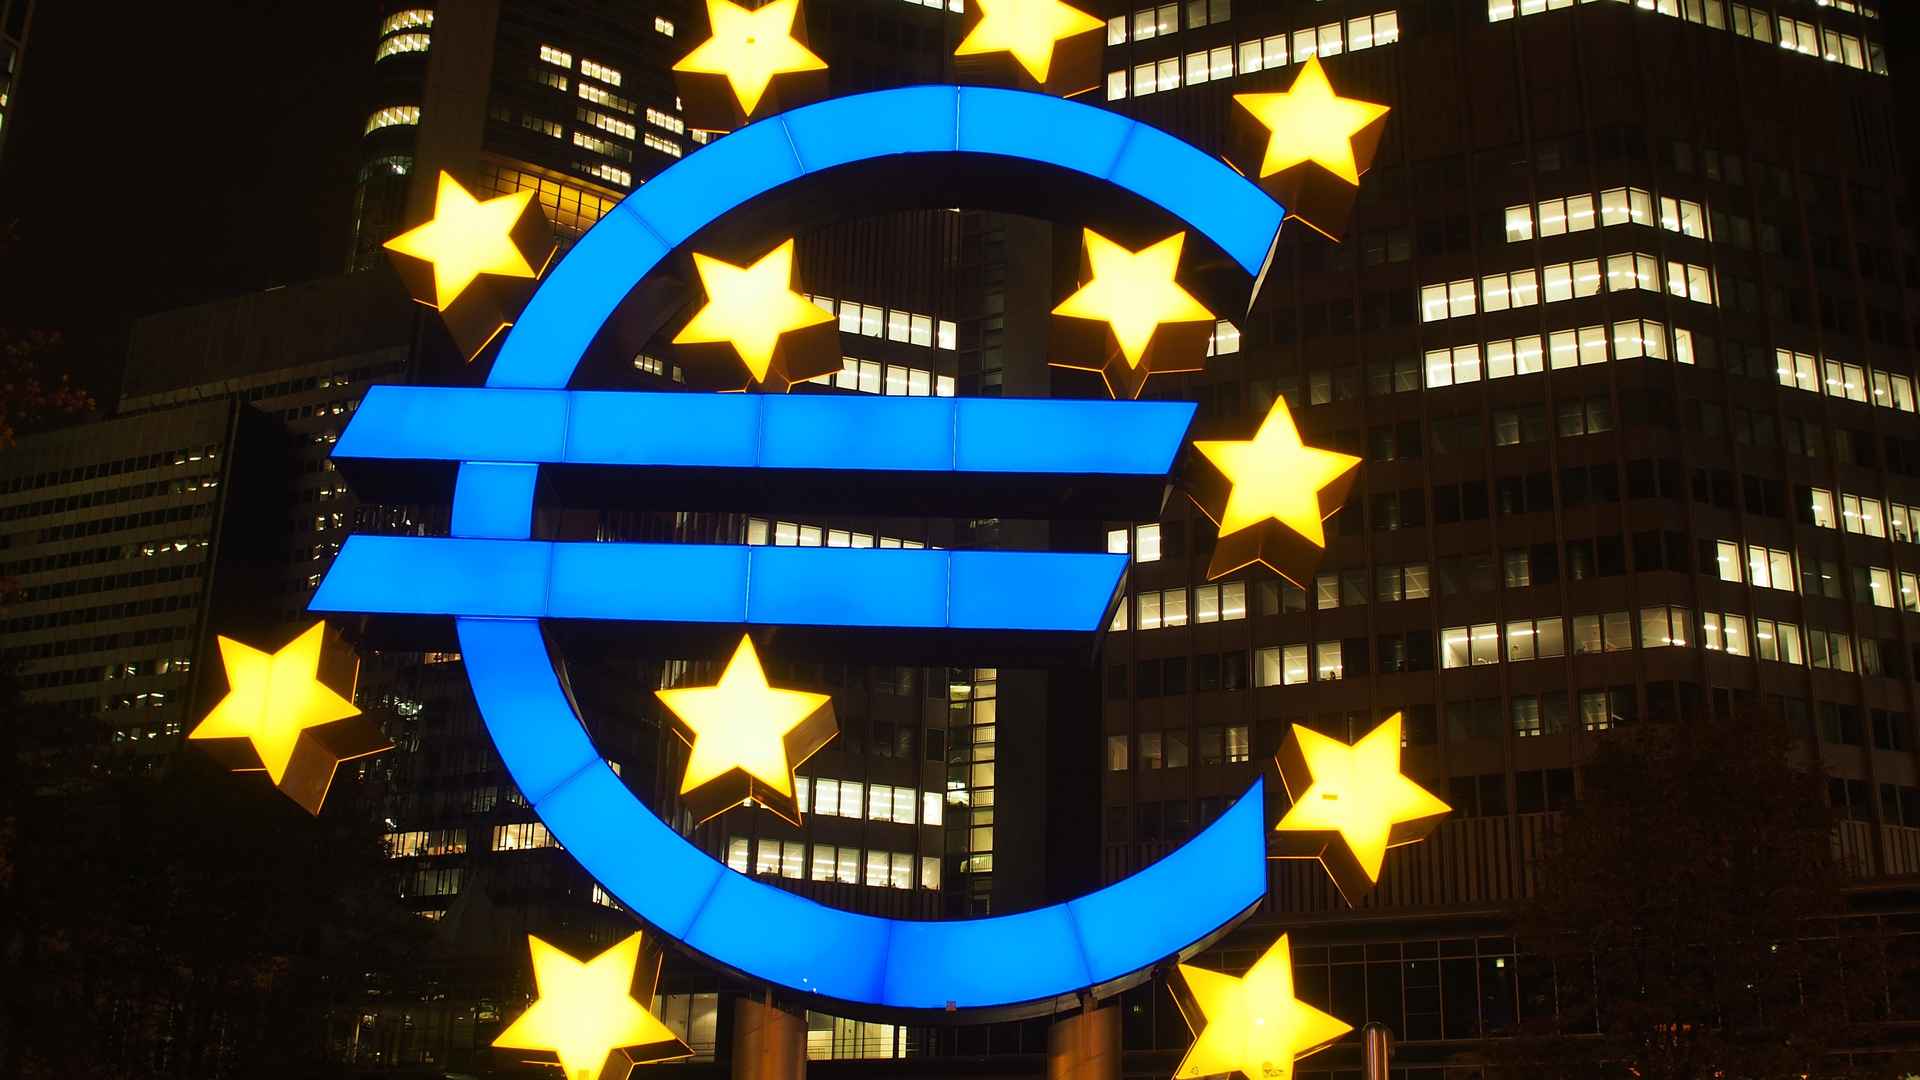 欧洲中央银行建筑桌面壁纸图片-